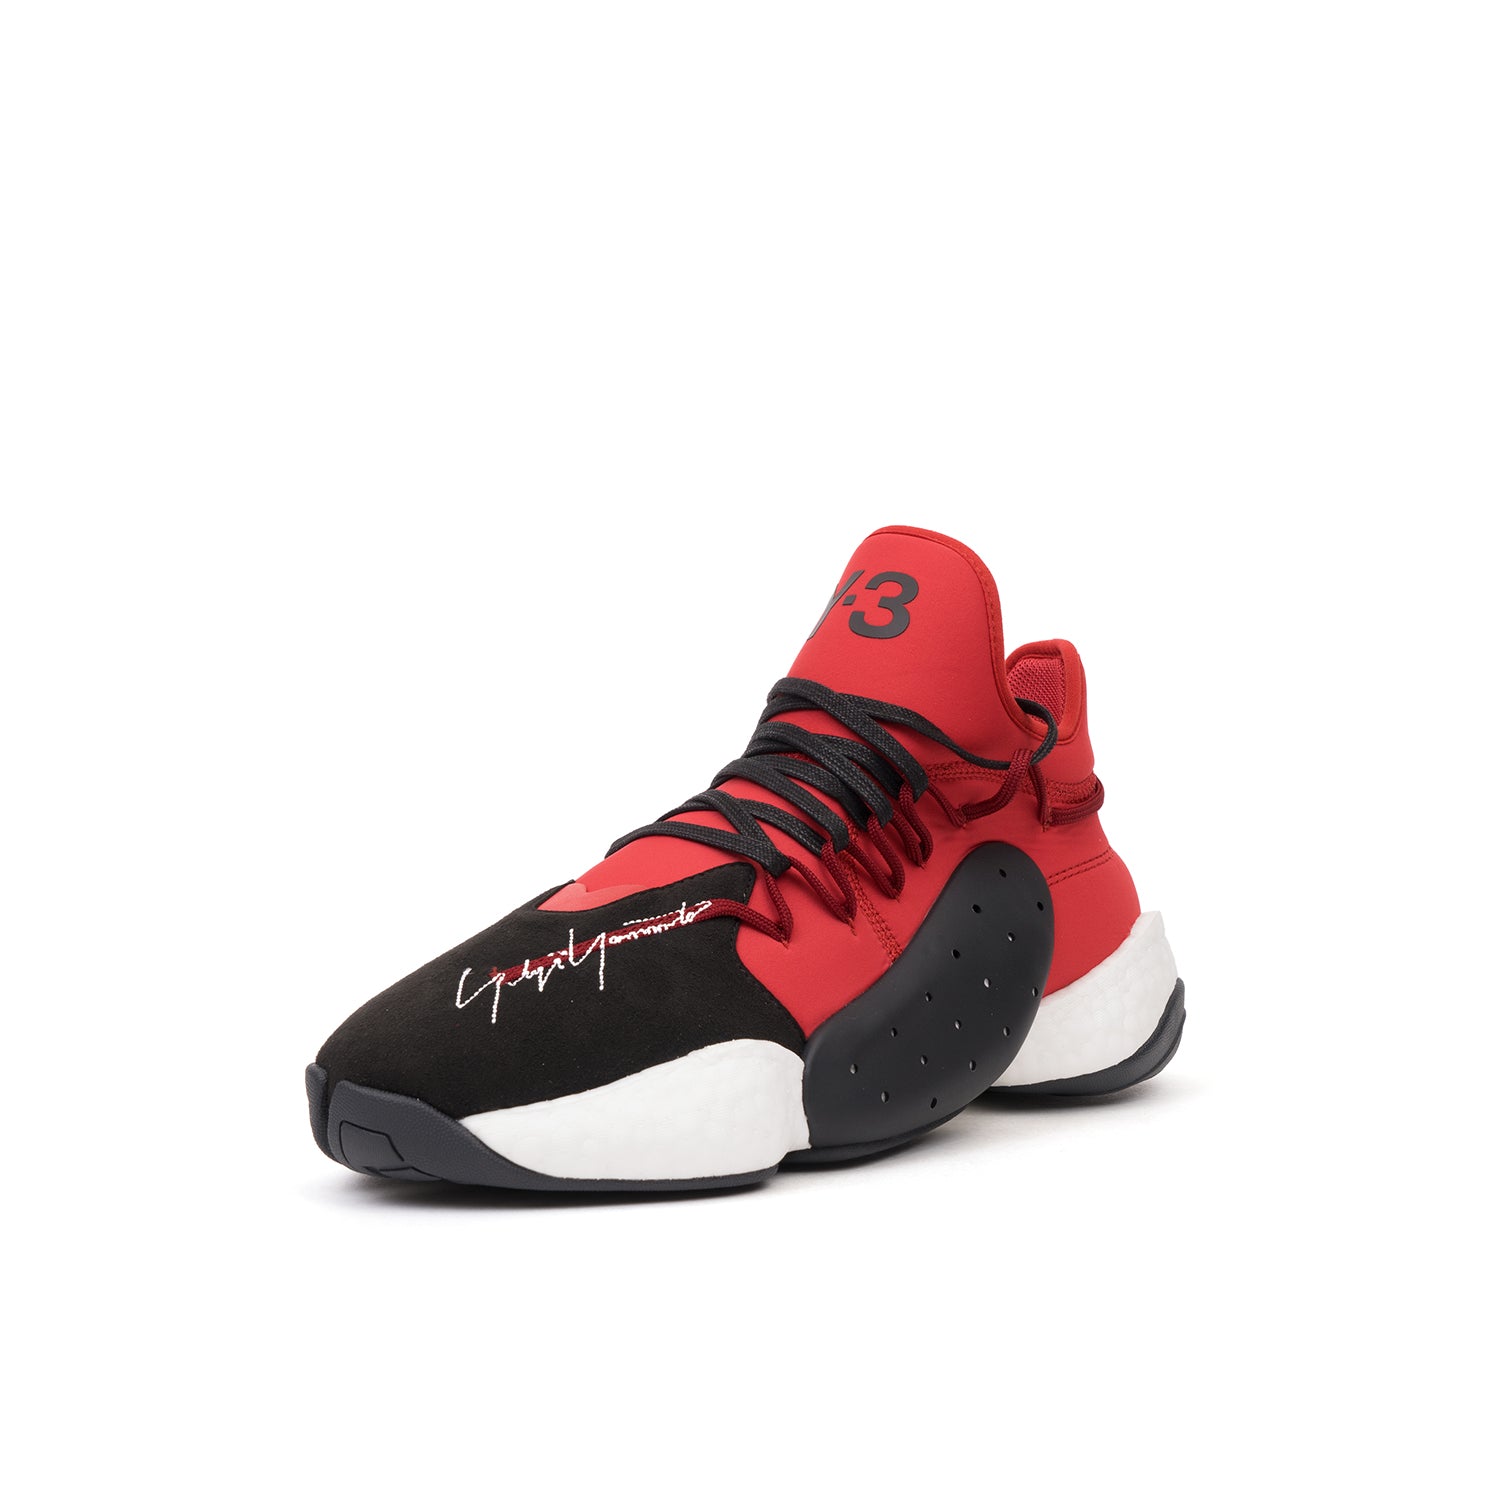 adidas Y-3 | BYW BBALL Black / Lush Red - BC0338